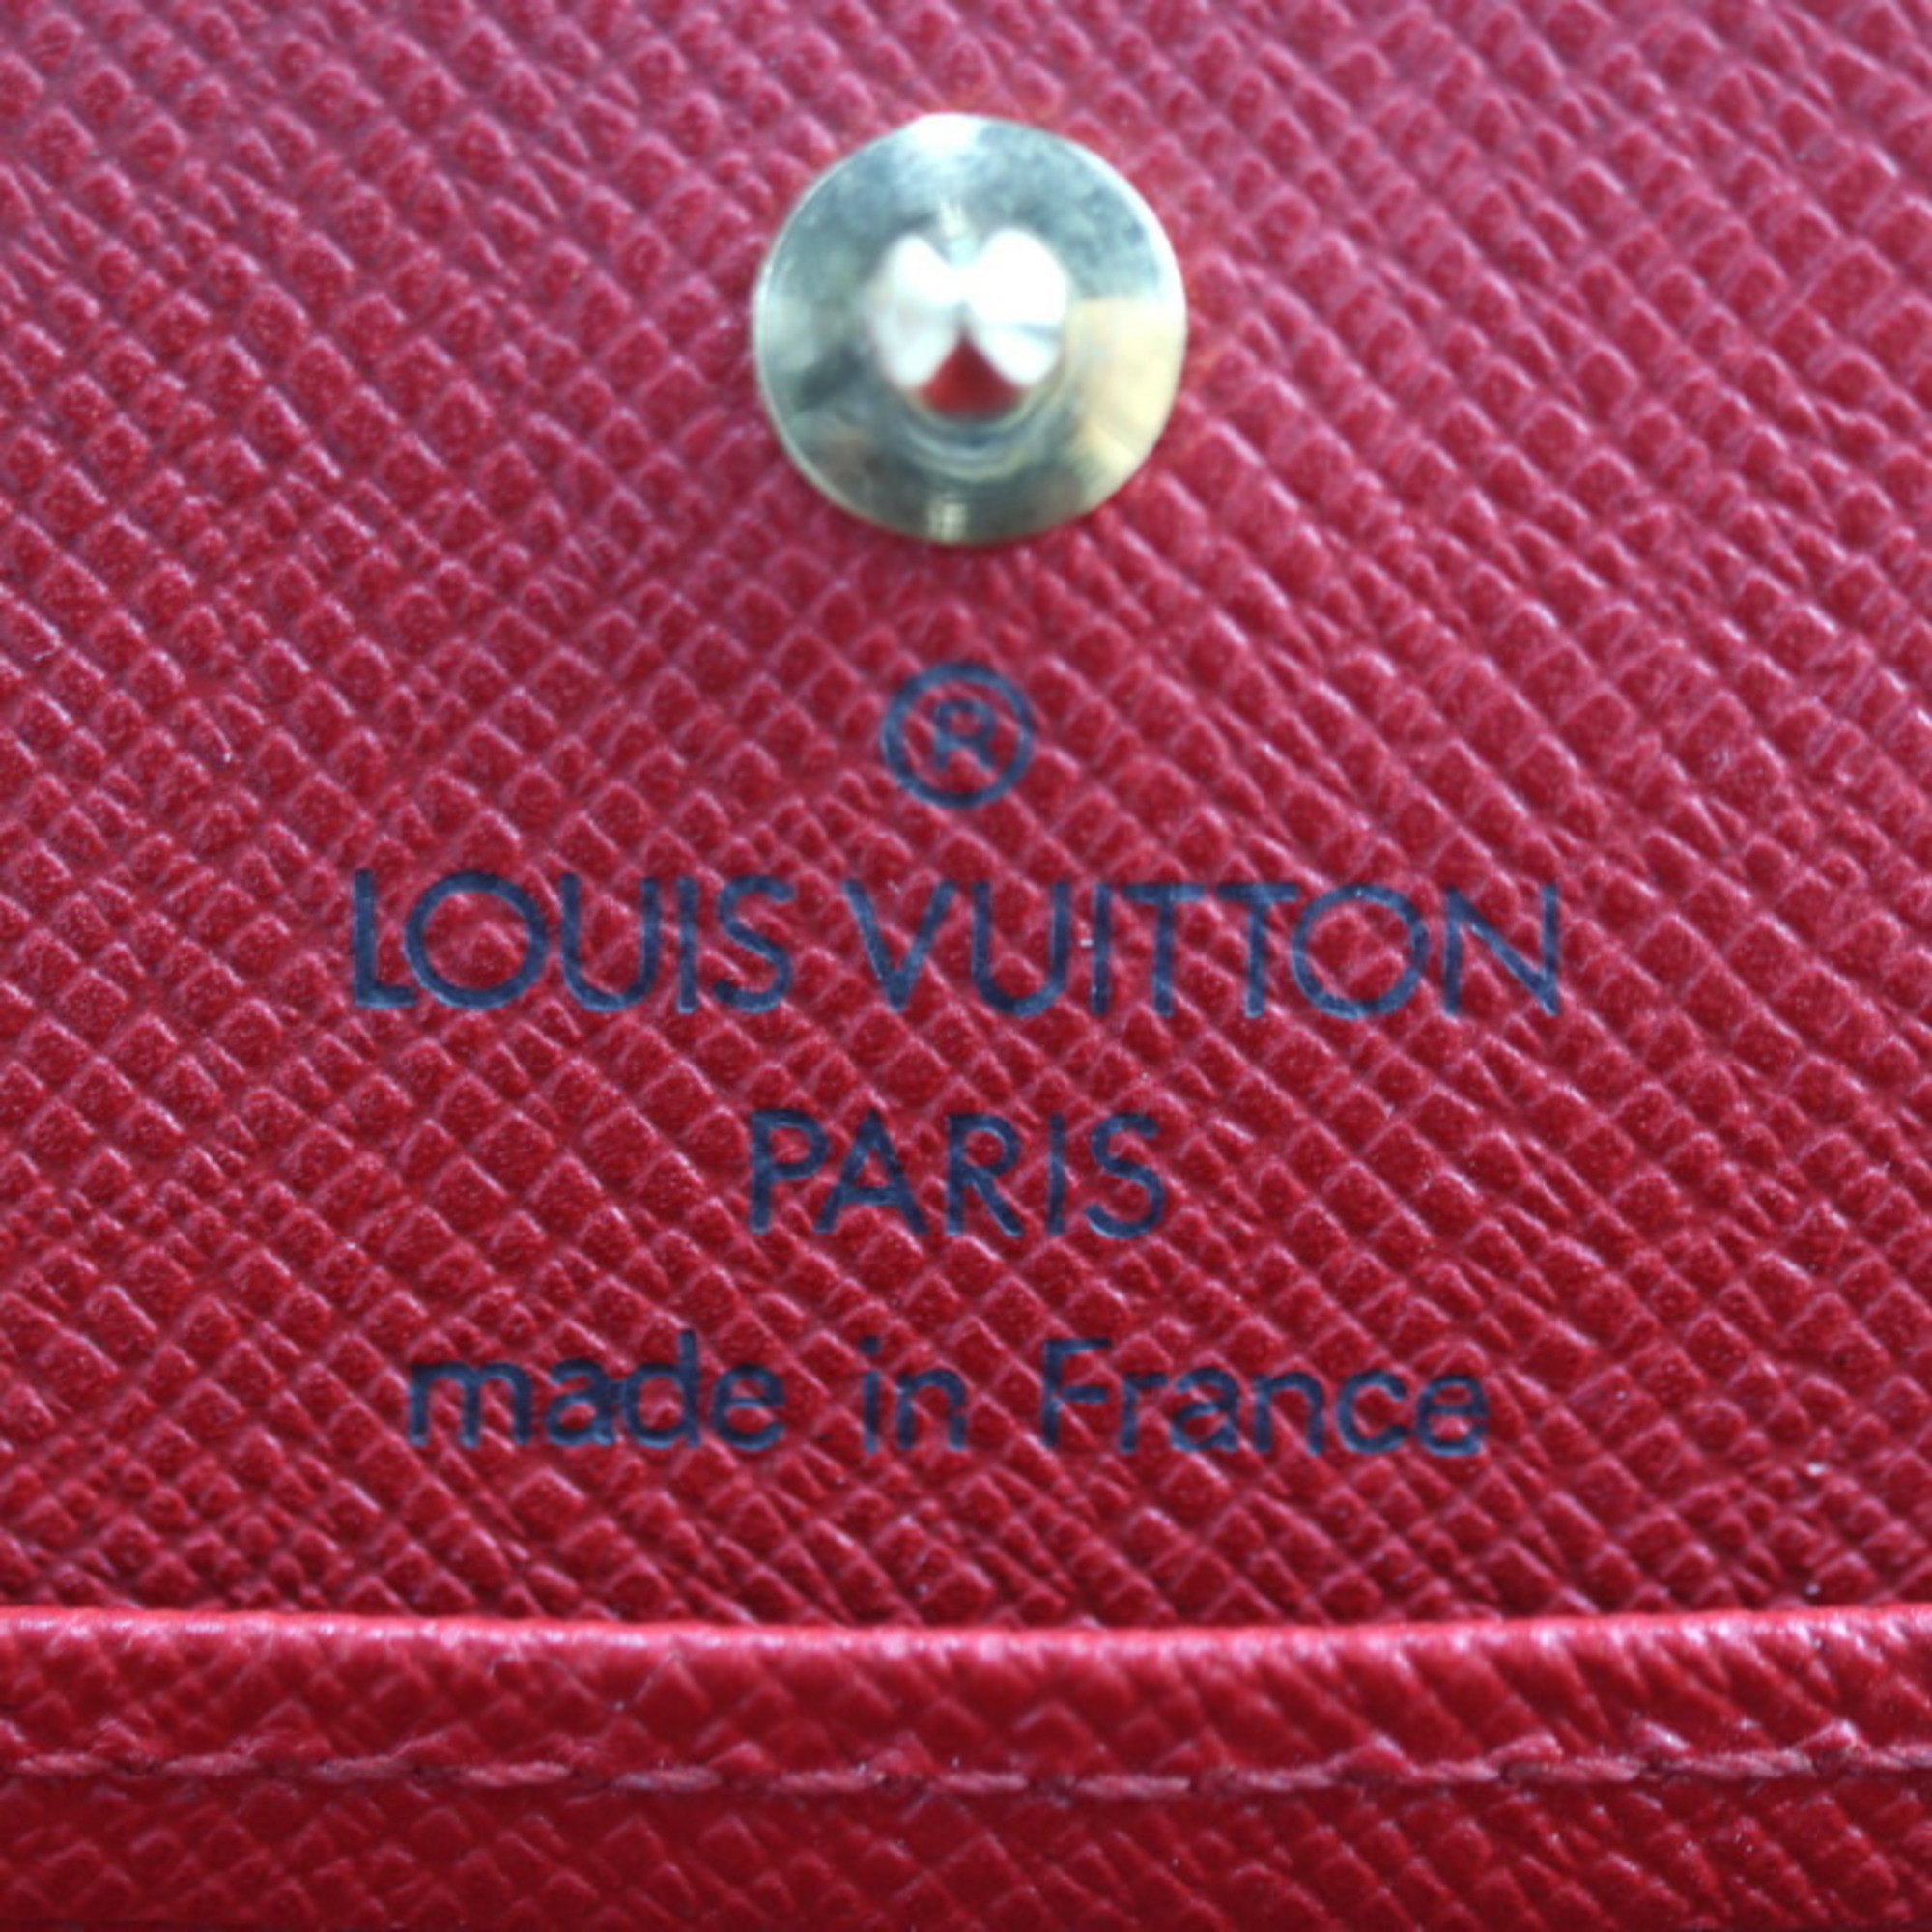 LOUIS VUITTON Portomone Boite Coin Case M63697 Epi Leather Castilian Red Square Purse Vuitton